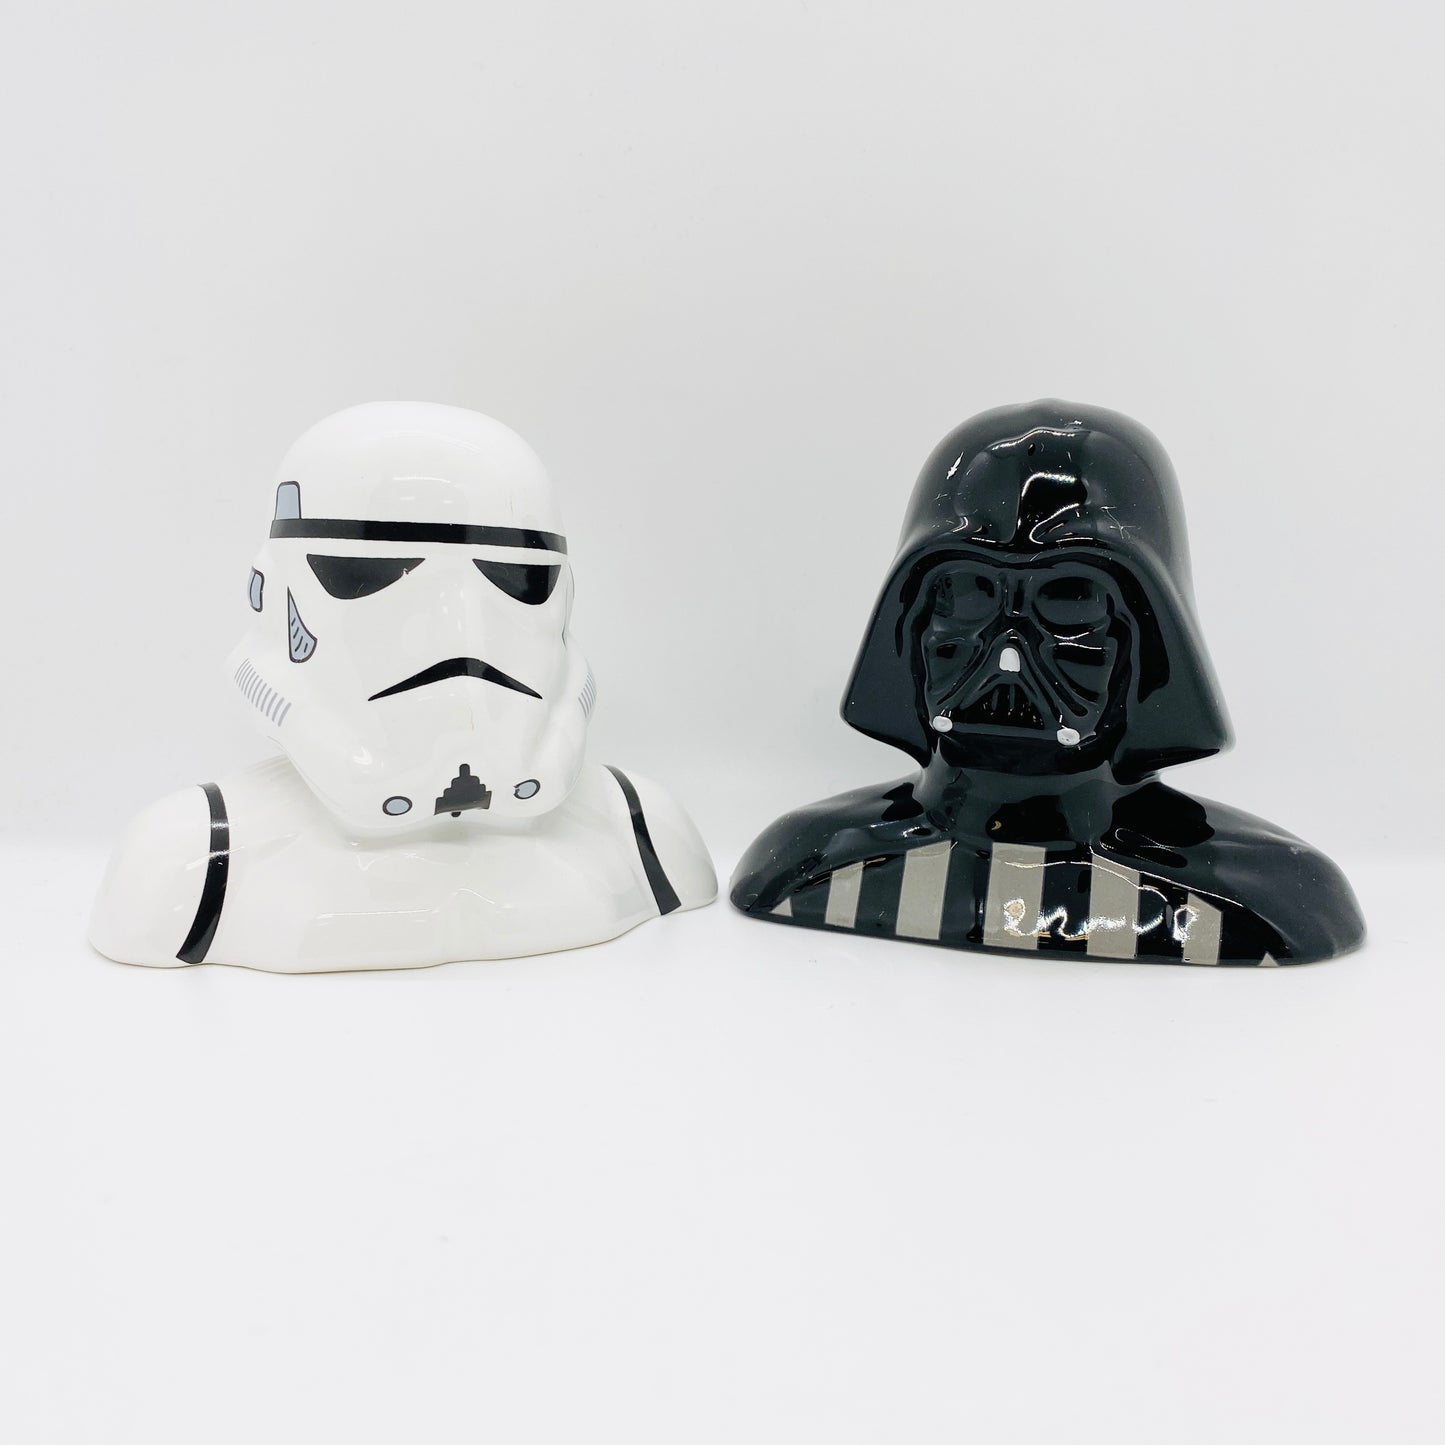 Stormtrooper And Darth Vader Sculpted Salt & Pepper Set Star Wars